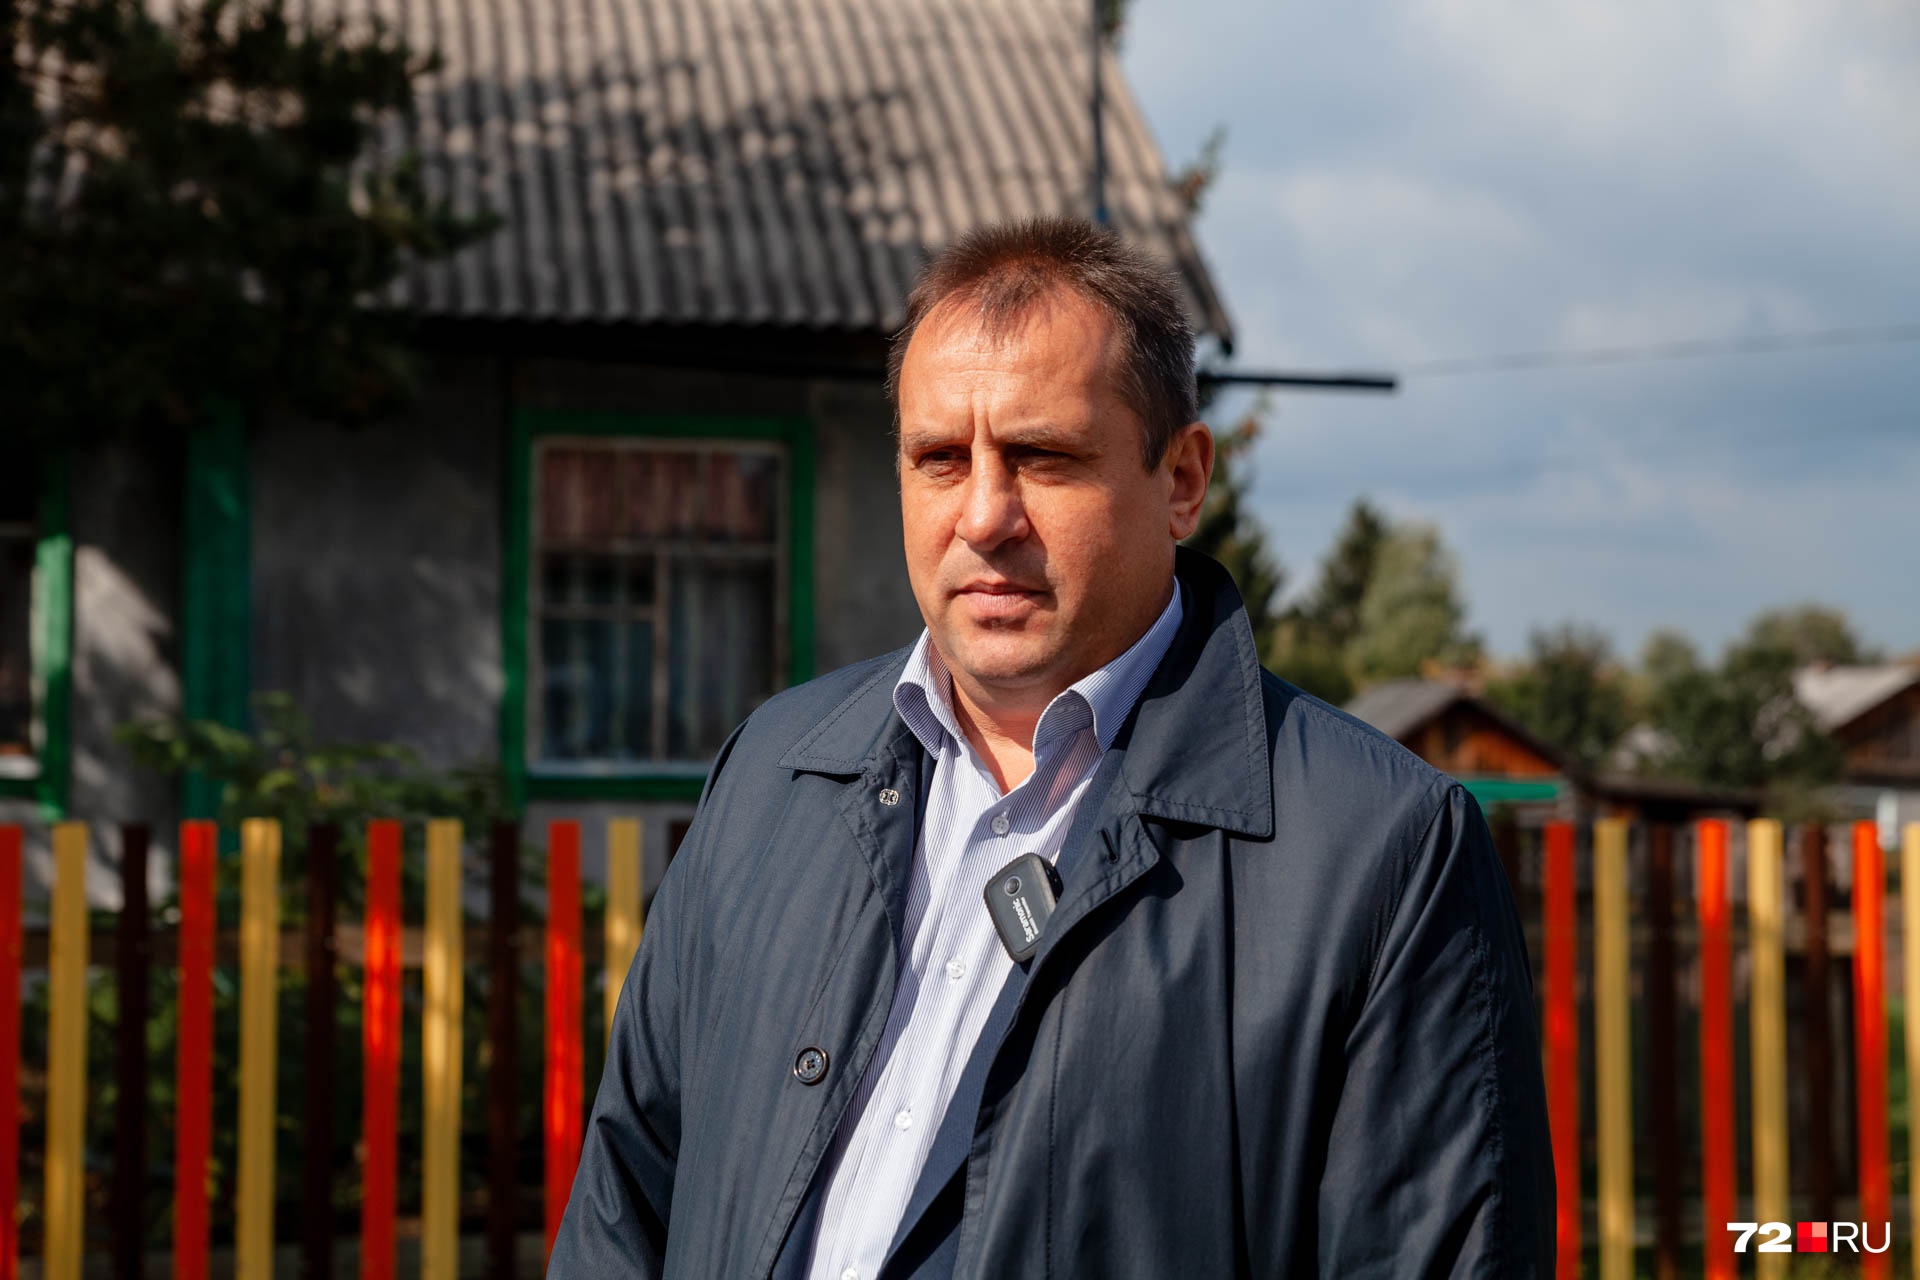 Виктор Васильев работает главой администрации Юргинского района с 2013 года. Он вырос в этих же краях и тоже, как Ильев, стал руководить родным районом